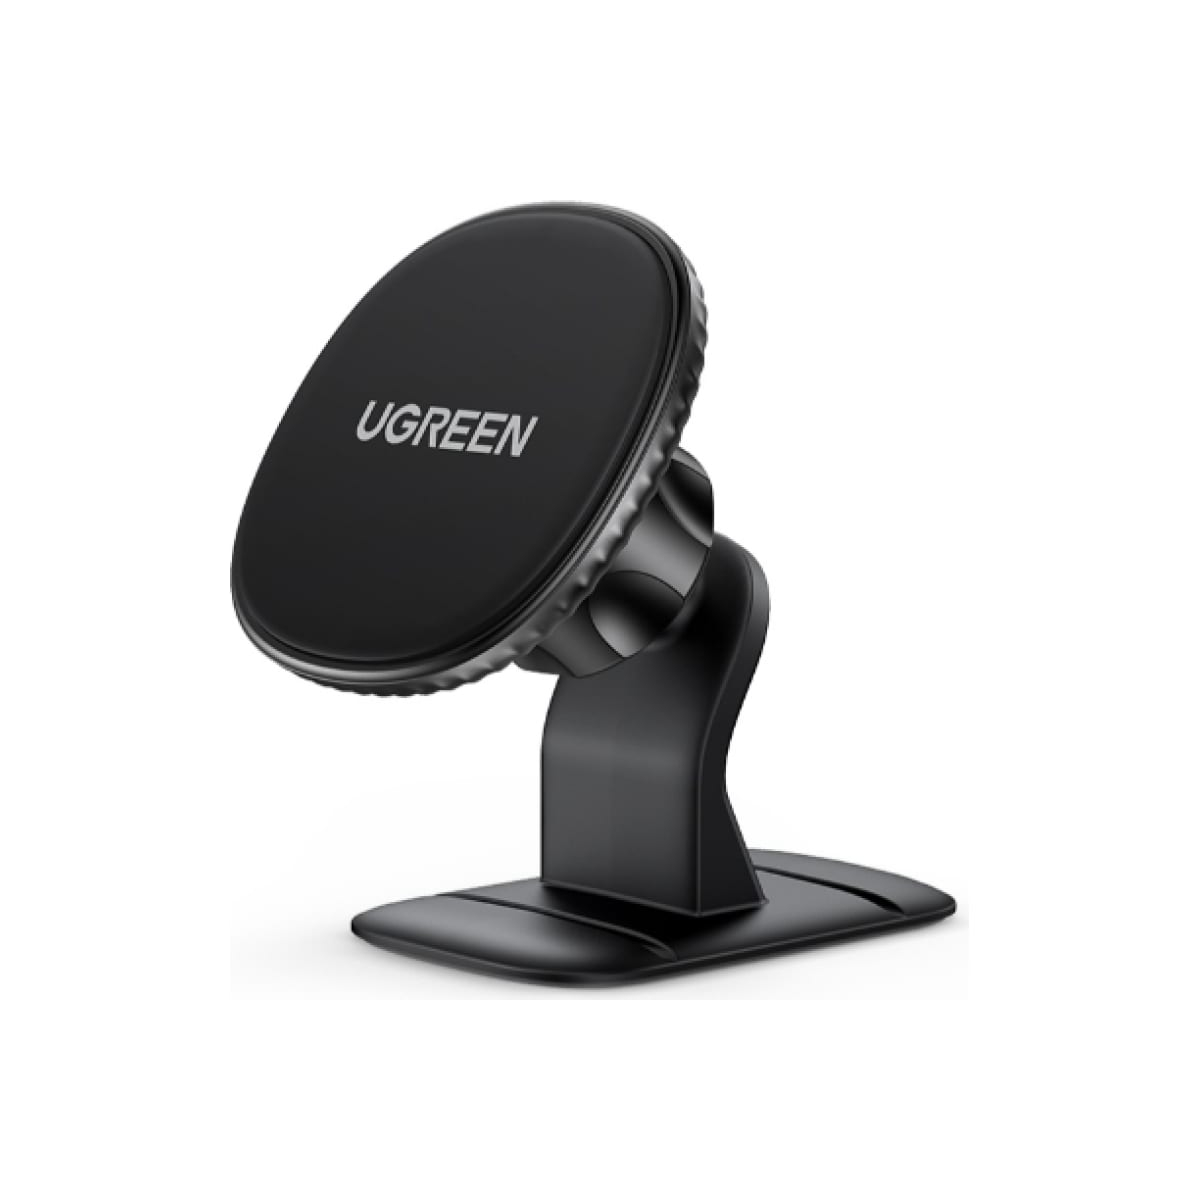 Автомобильный держатель для телефона UGREEN на панель, черный (80785) гибкий держатель для телефона с кронштейном ugreen 30488